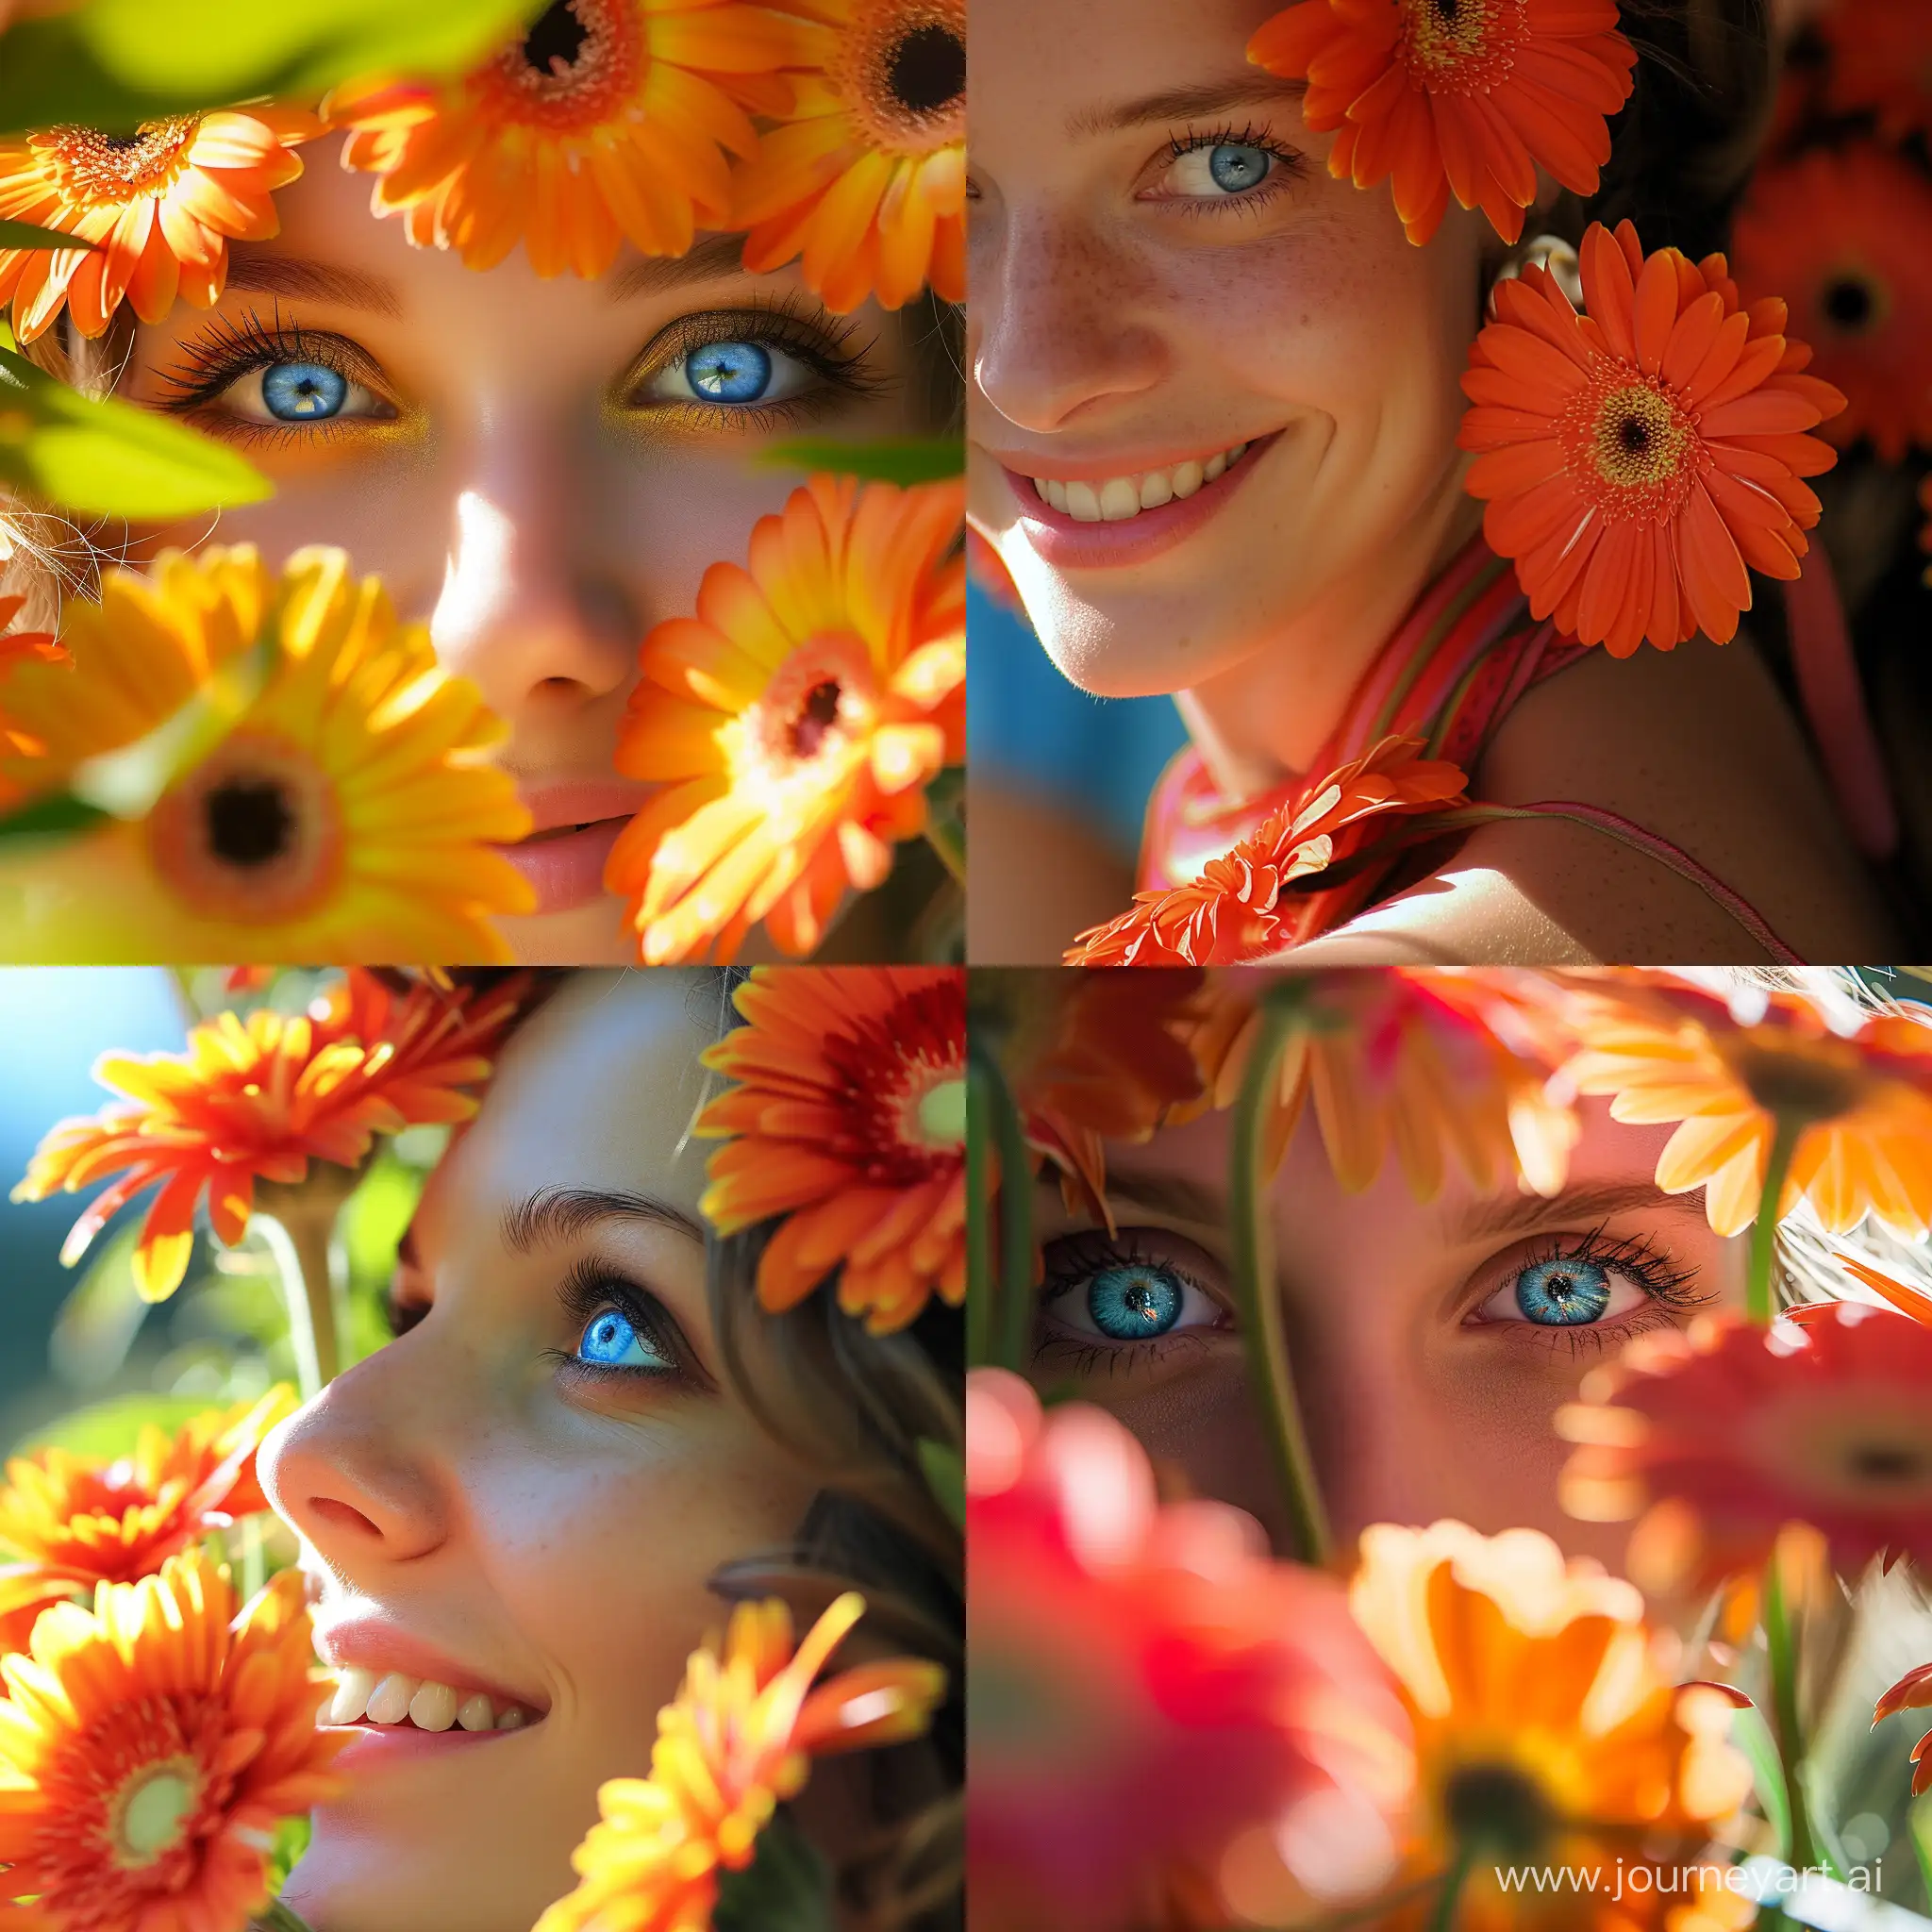 Цветы герберы, солнце, весна, улыбки, голубые глаза женщины, Болеро Равеля